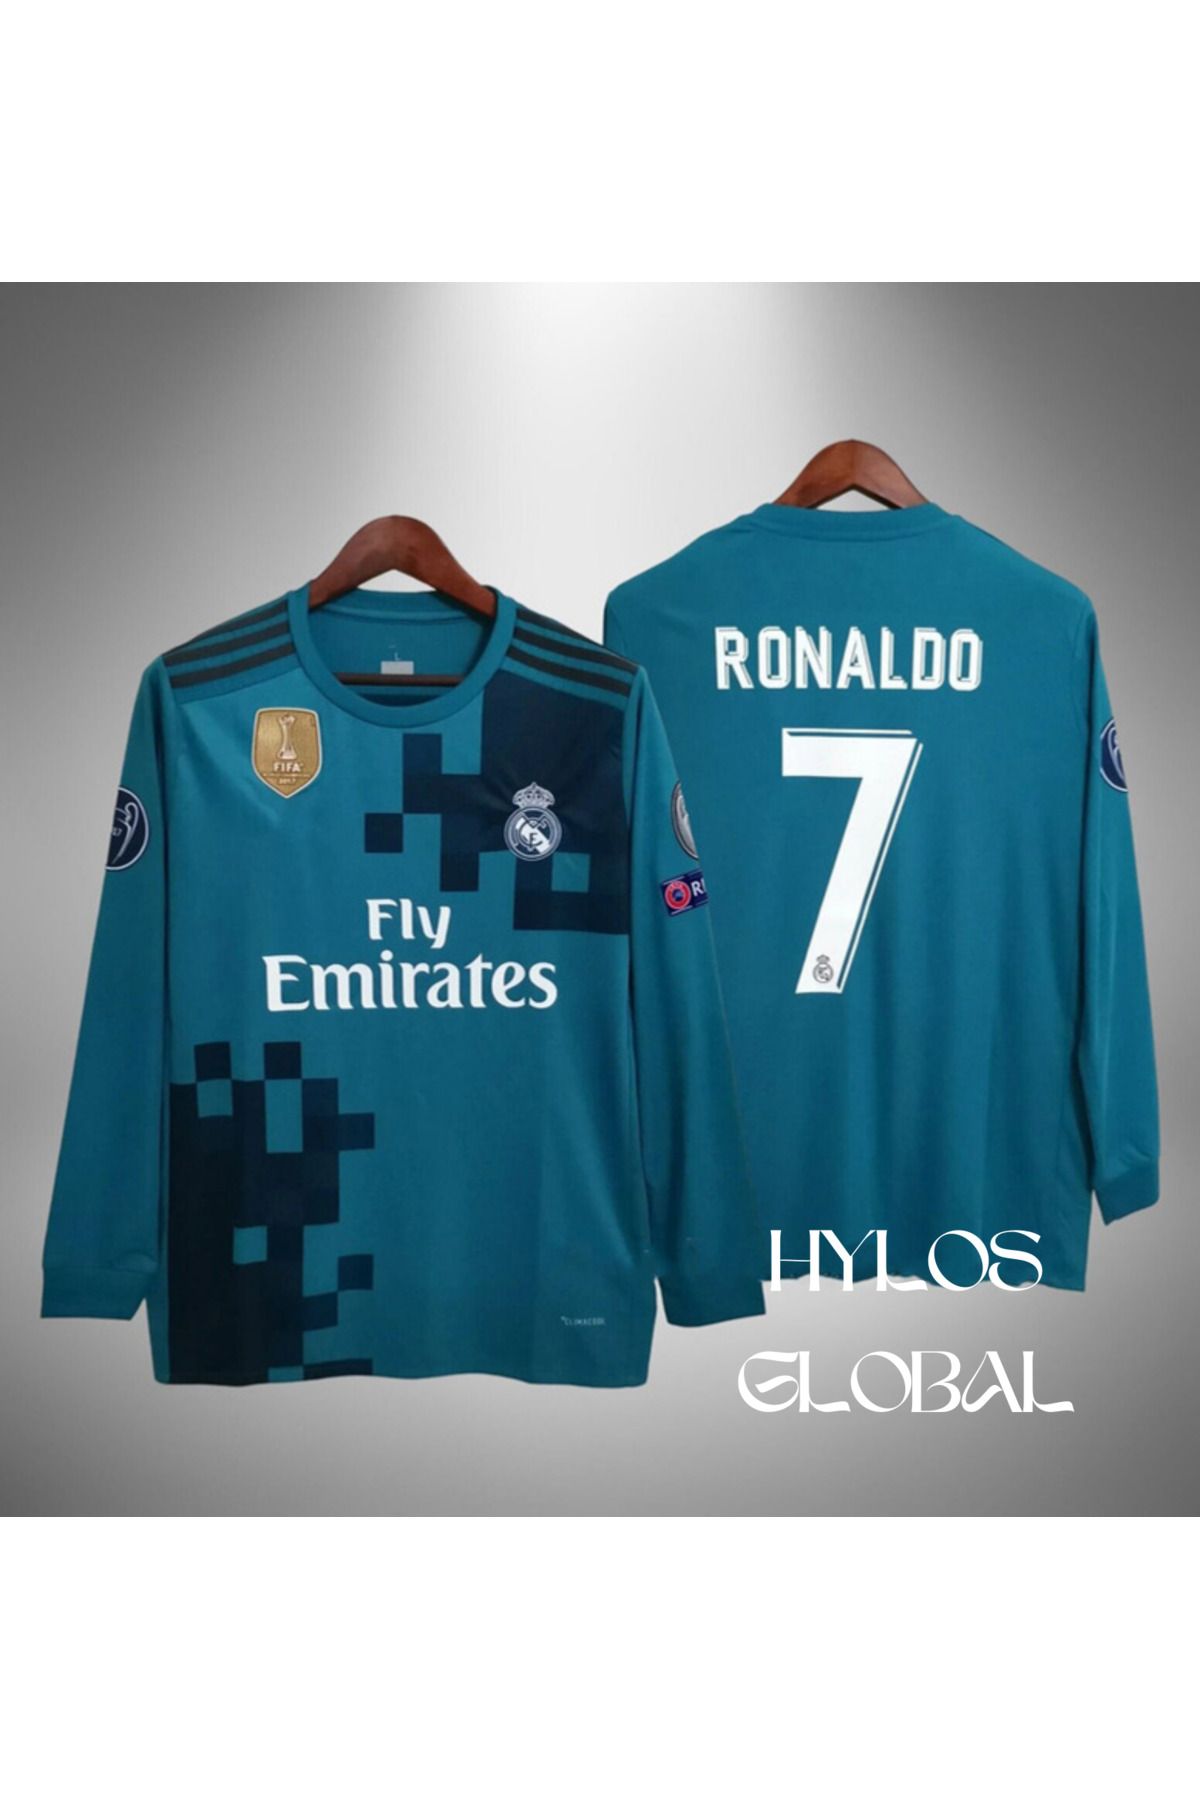 ZİLONG Realmadrid Ronaldo 2018 Şampiyonlar Ligi Uzun Kollu Futbol Forması Yetişkin